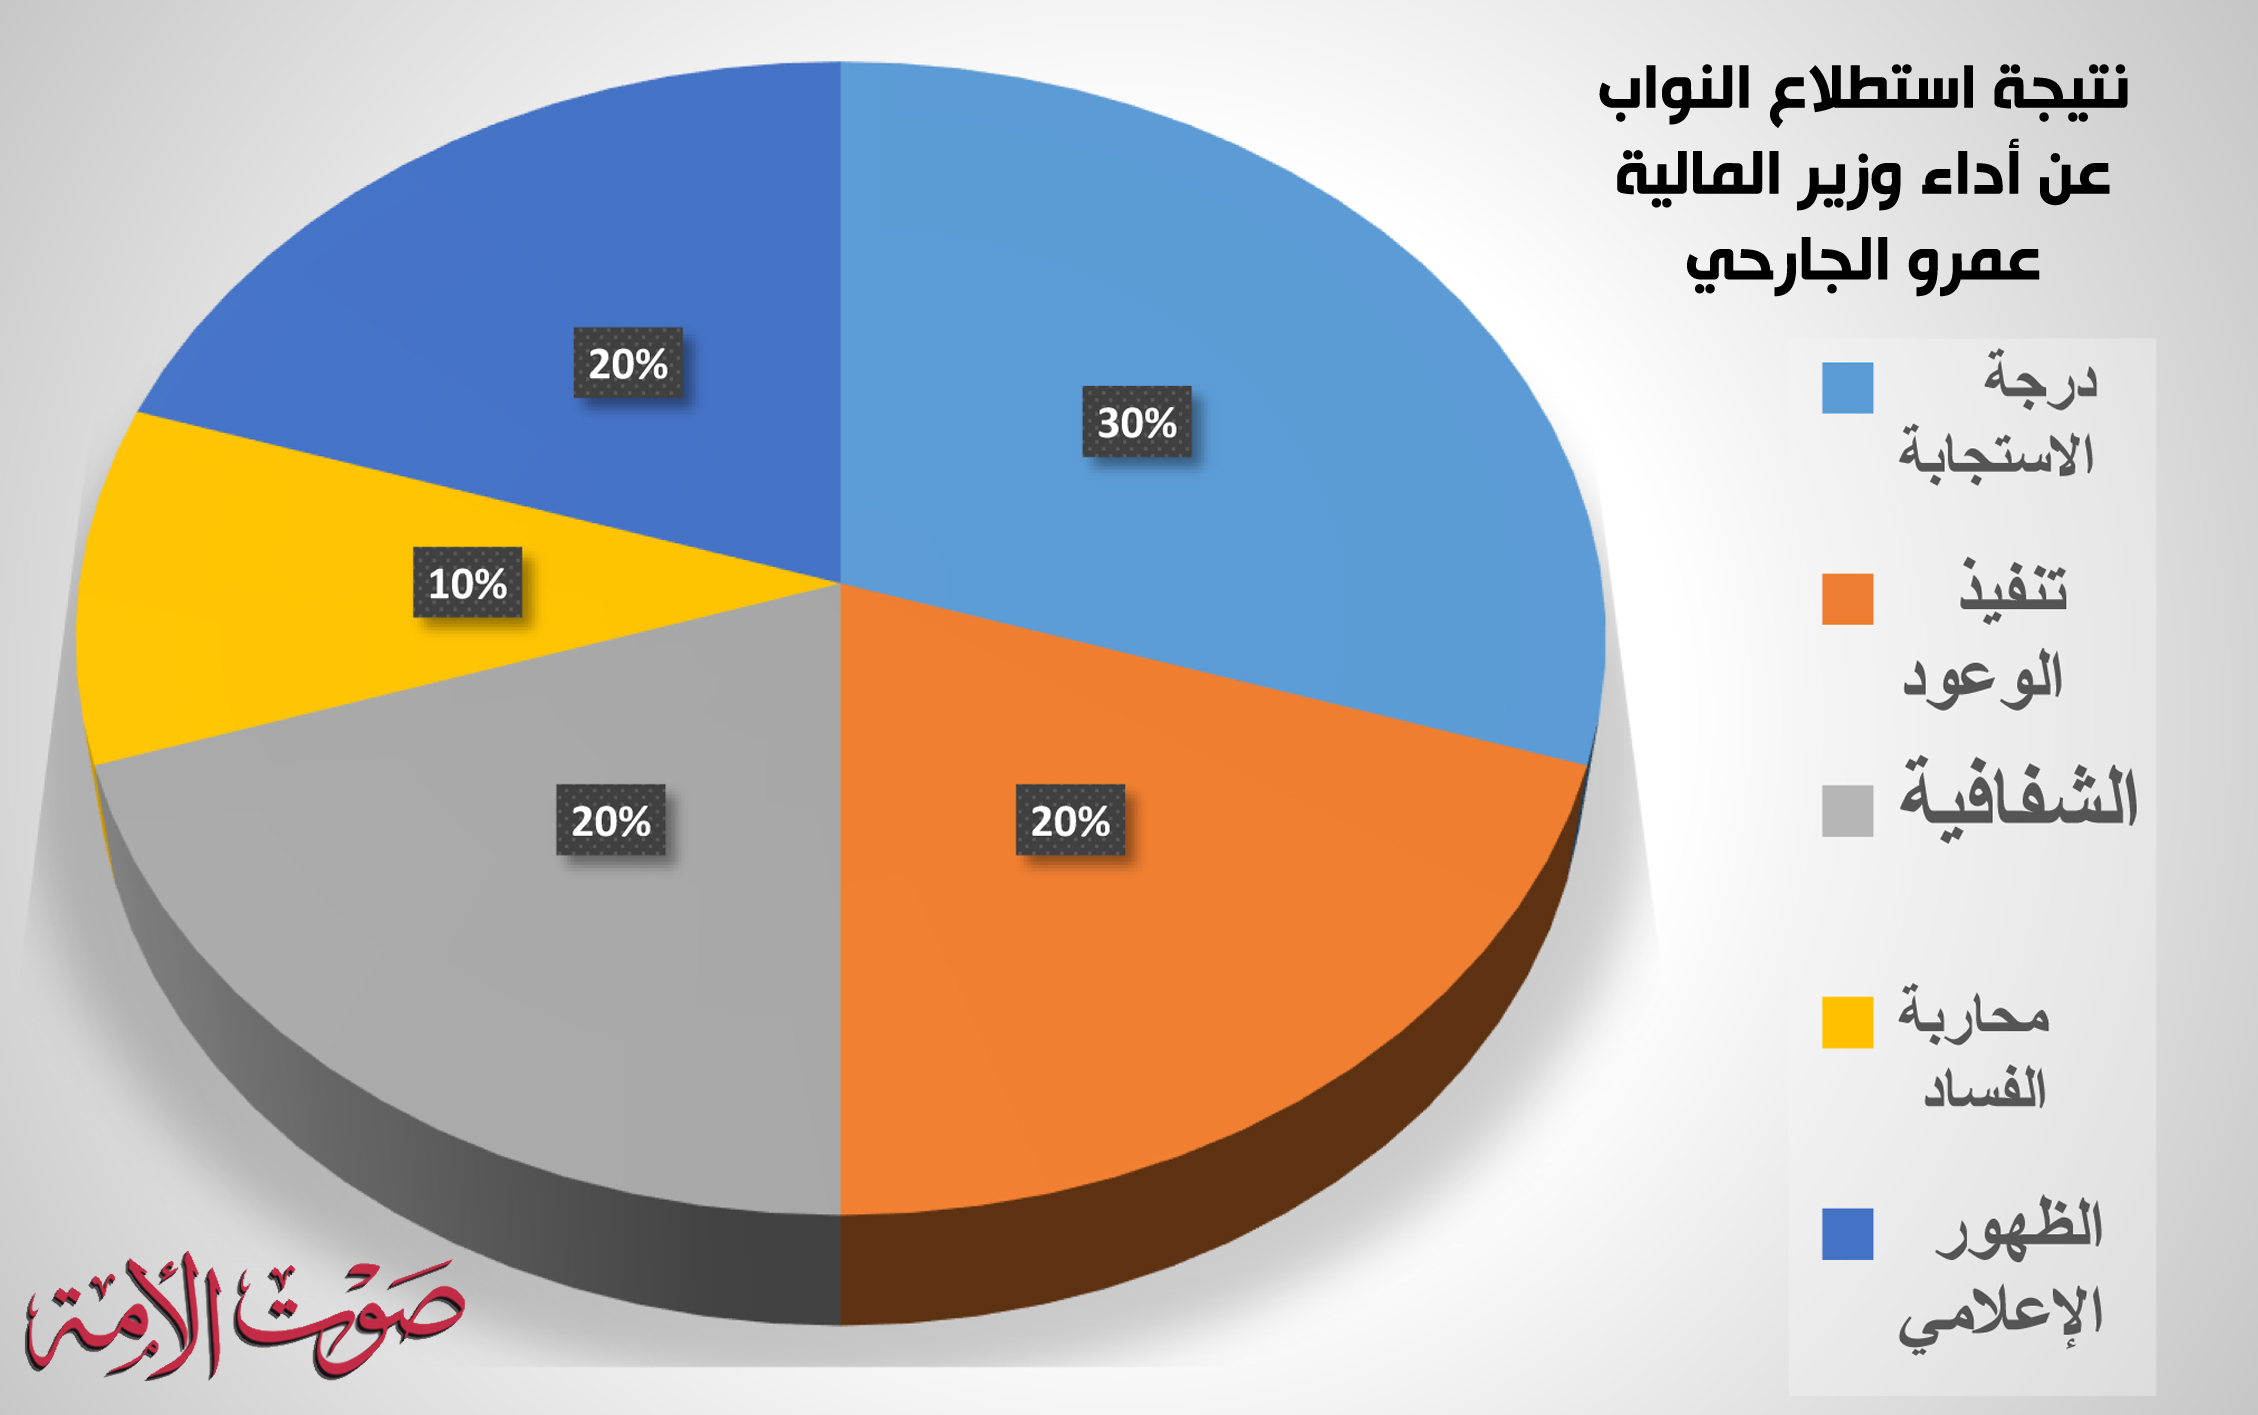 نتيجة استطلاع النواب عن أداء وزير المالية عمرو الجارحي